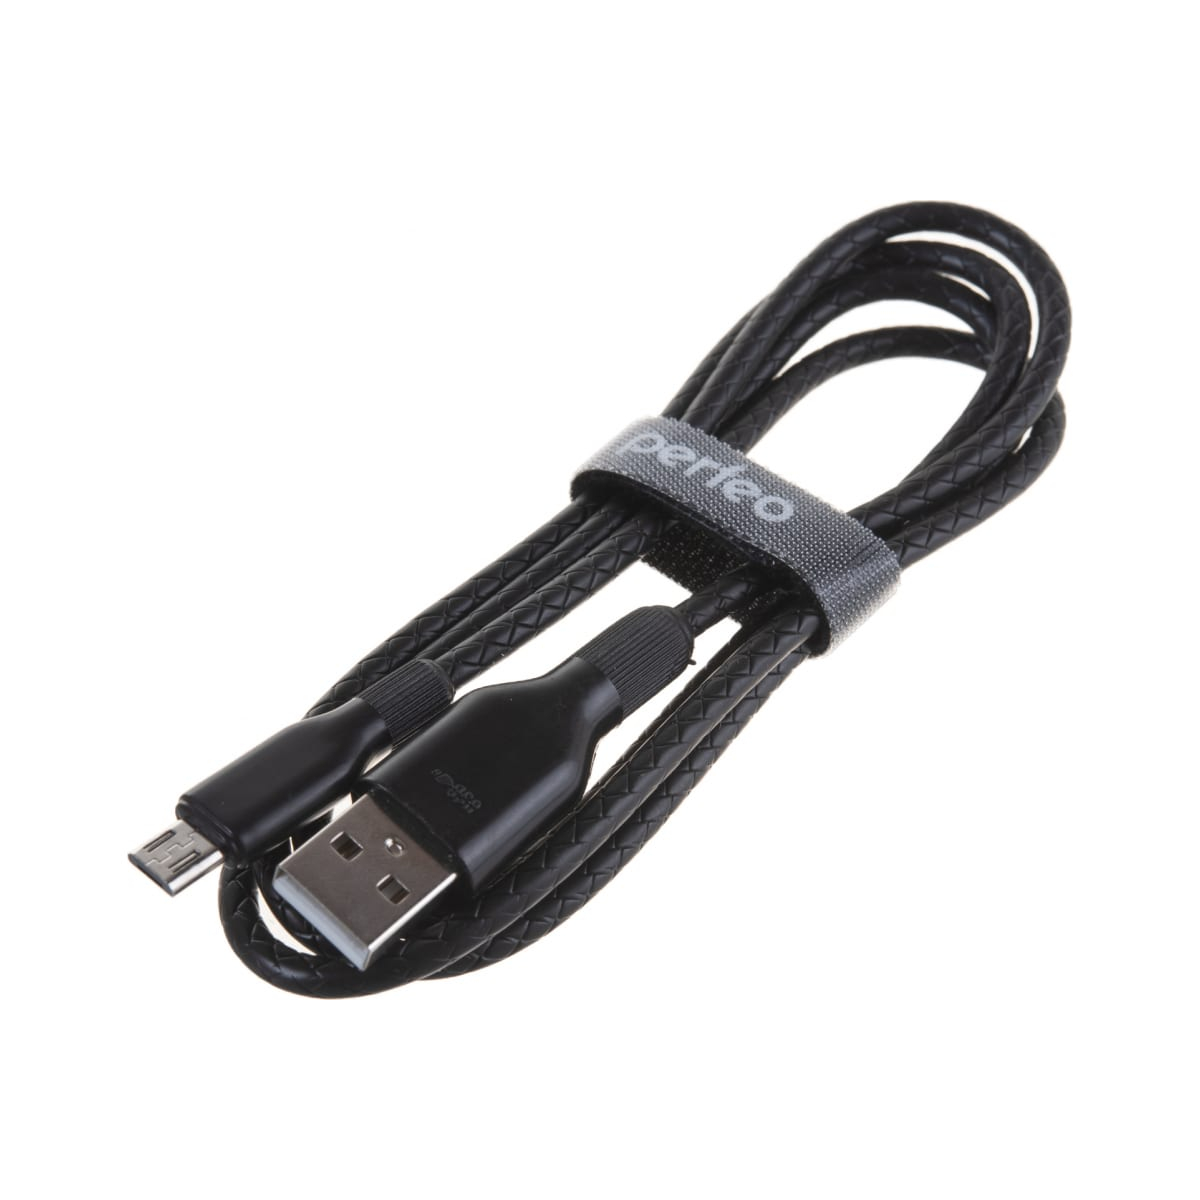 Кабель Perfeo U4807 USB 2.0 A вилка - Micro USB вилка 1 м black, цвет черный